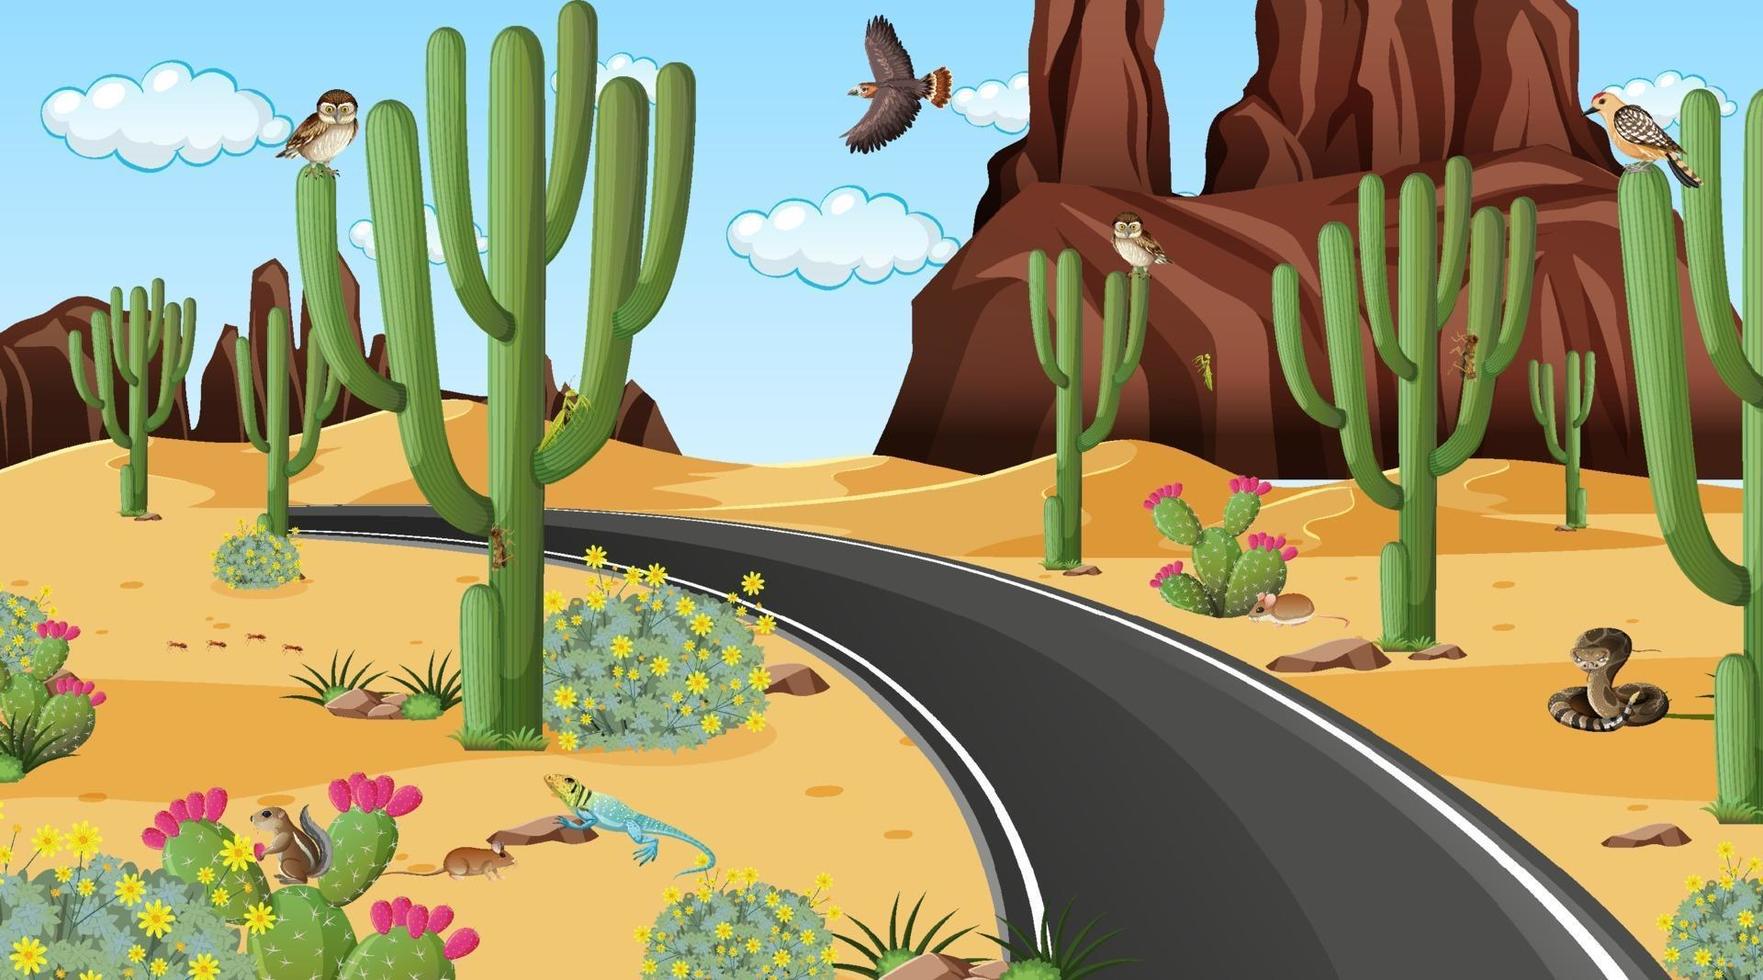 estrada através da cena da paisagem da floresta do deserto com animais do deserto vetor